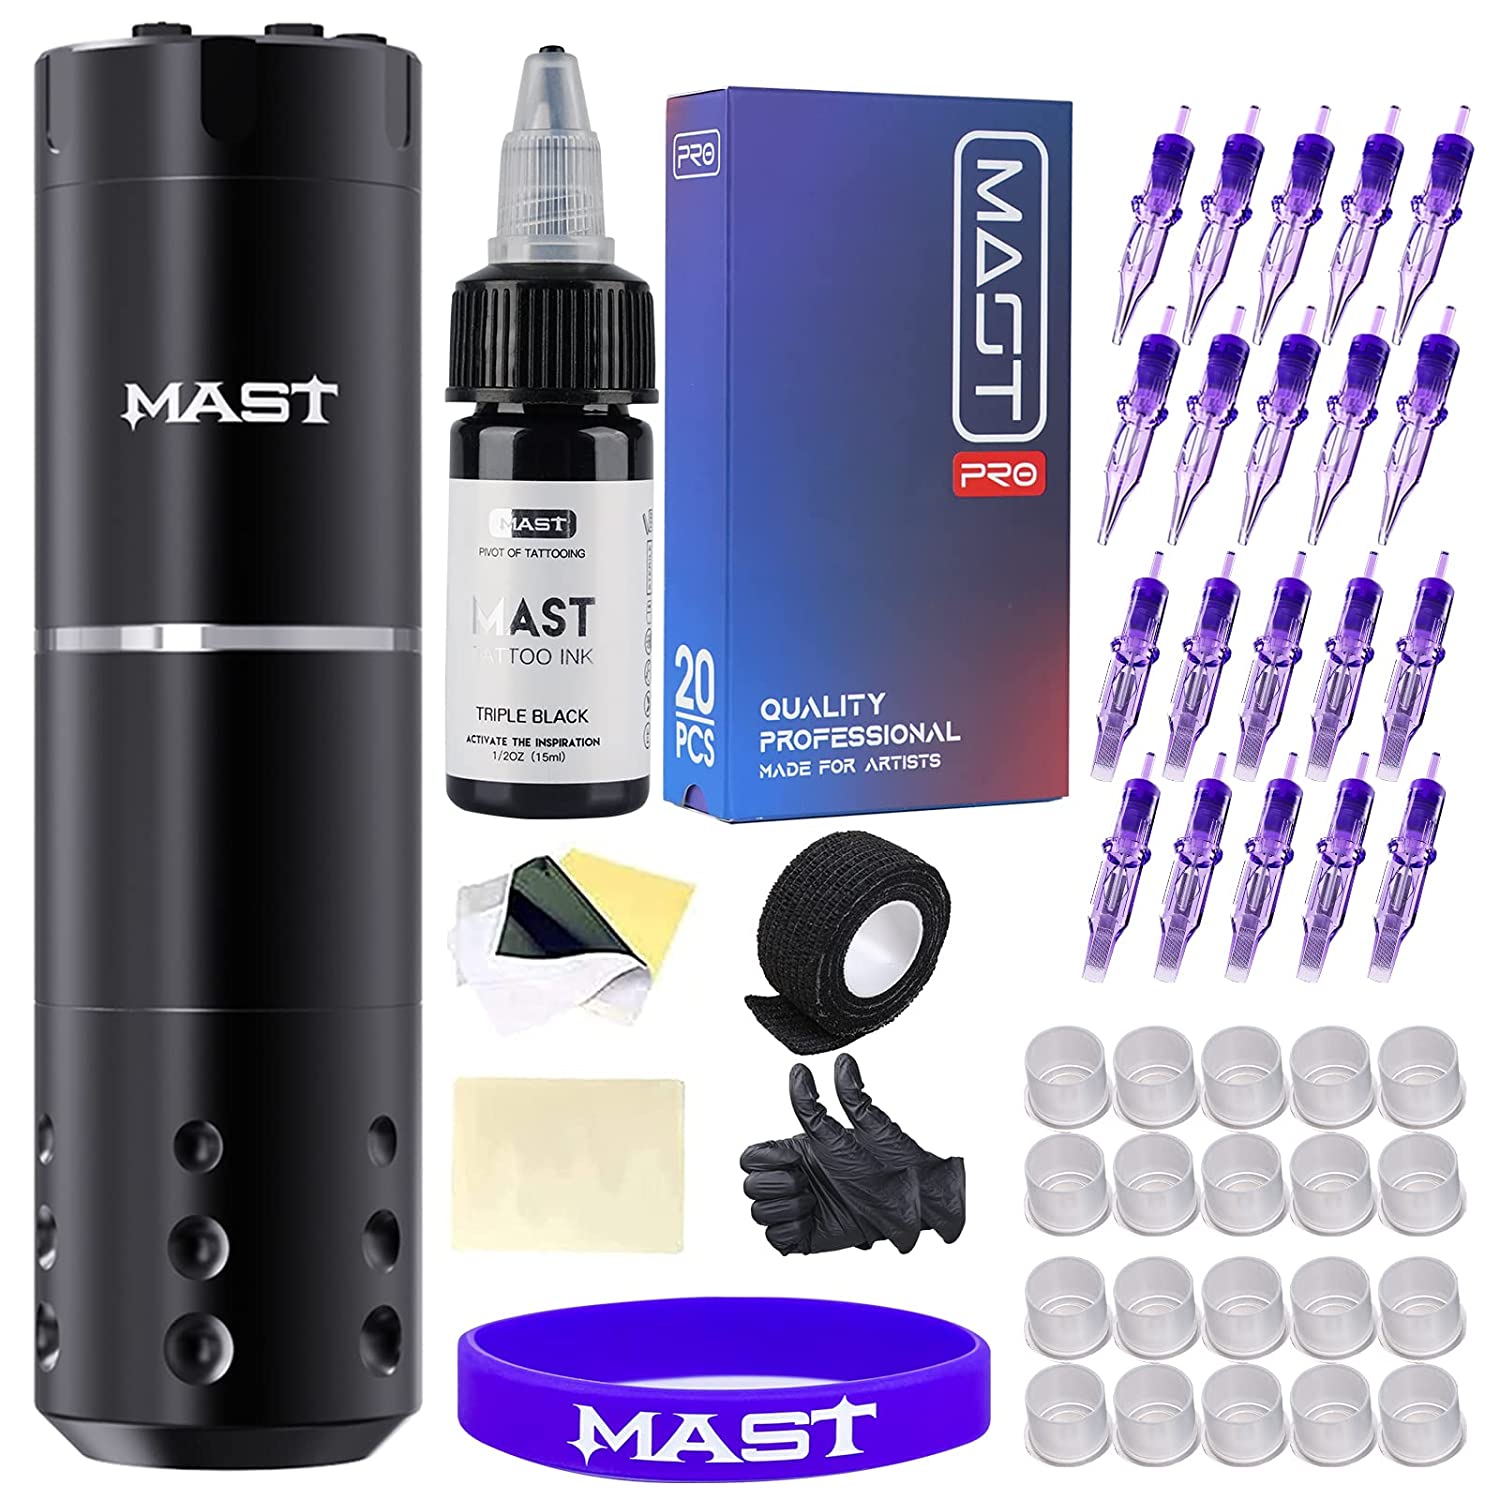 Mast A1 Wireless Tattoo Pen Machine Gun Kit - Fine Cordless Tattoo Kit